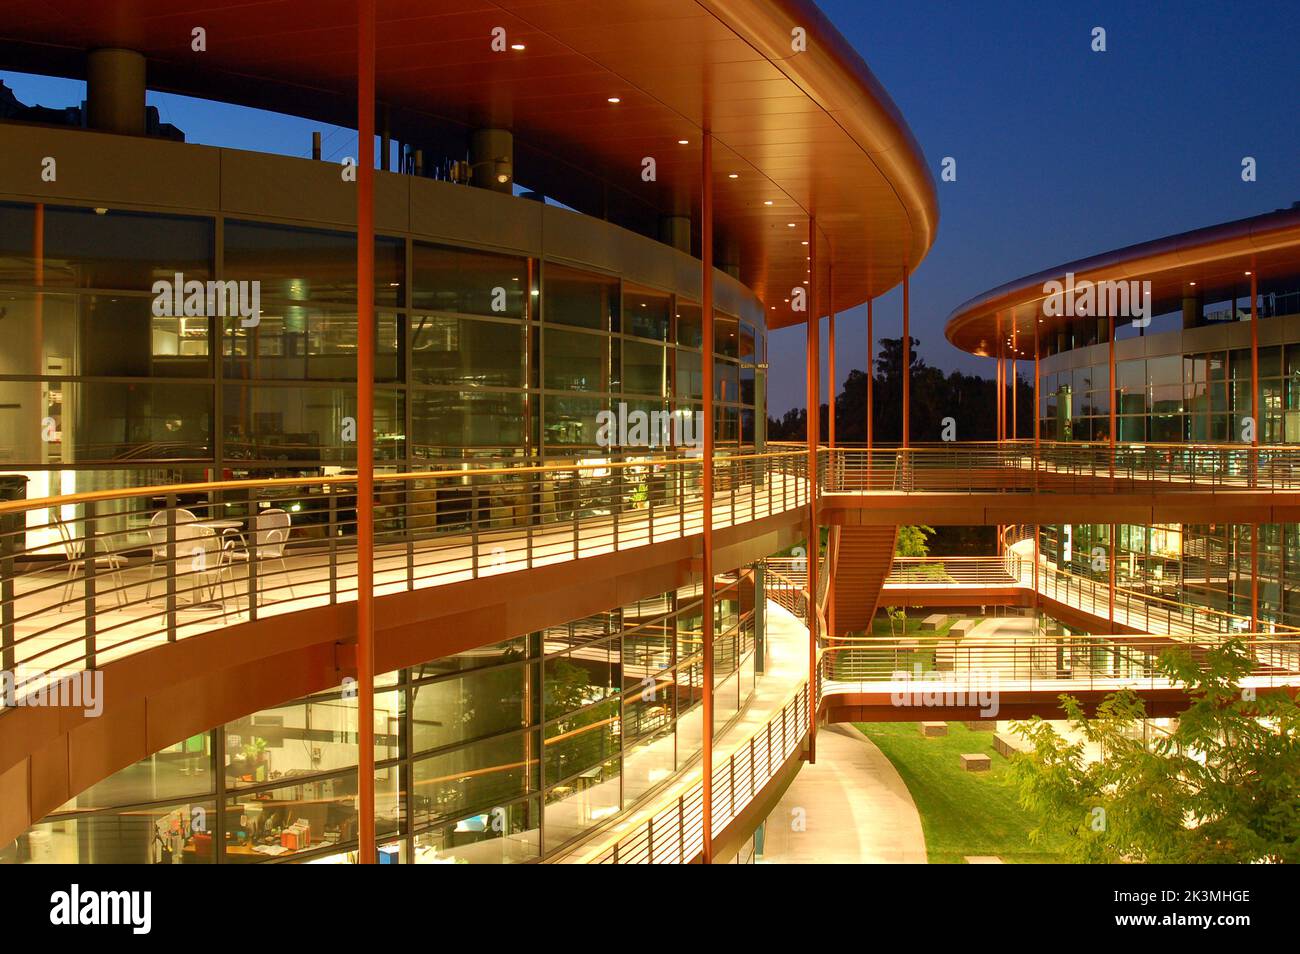 Le James Clark Center, situé sur le campus de l'université de Stanford, à Palo Alto, est un bâtiment remarquable doté de terrasses et de balcons incurvés Banque D'Images